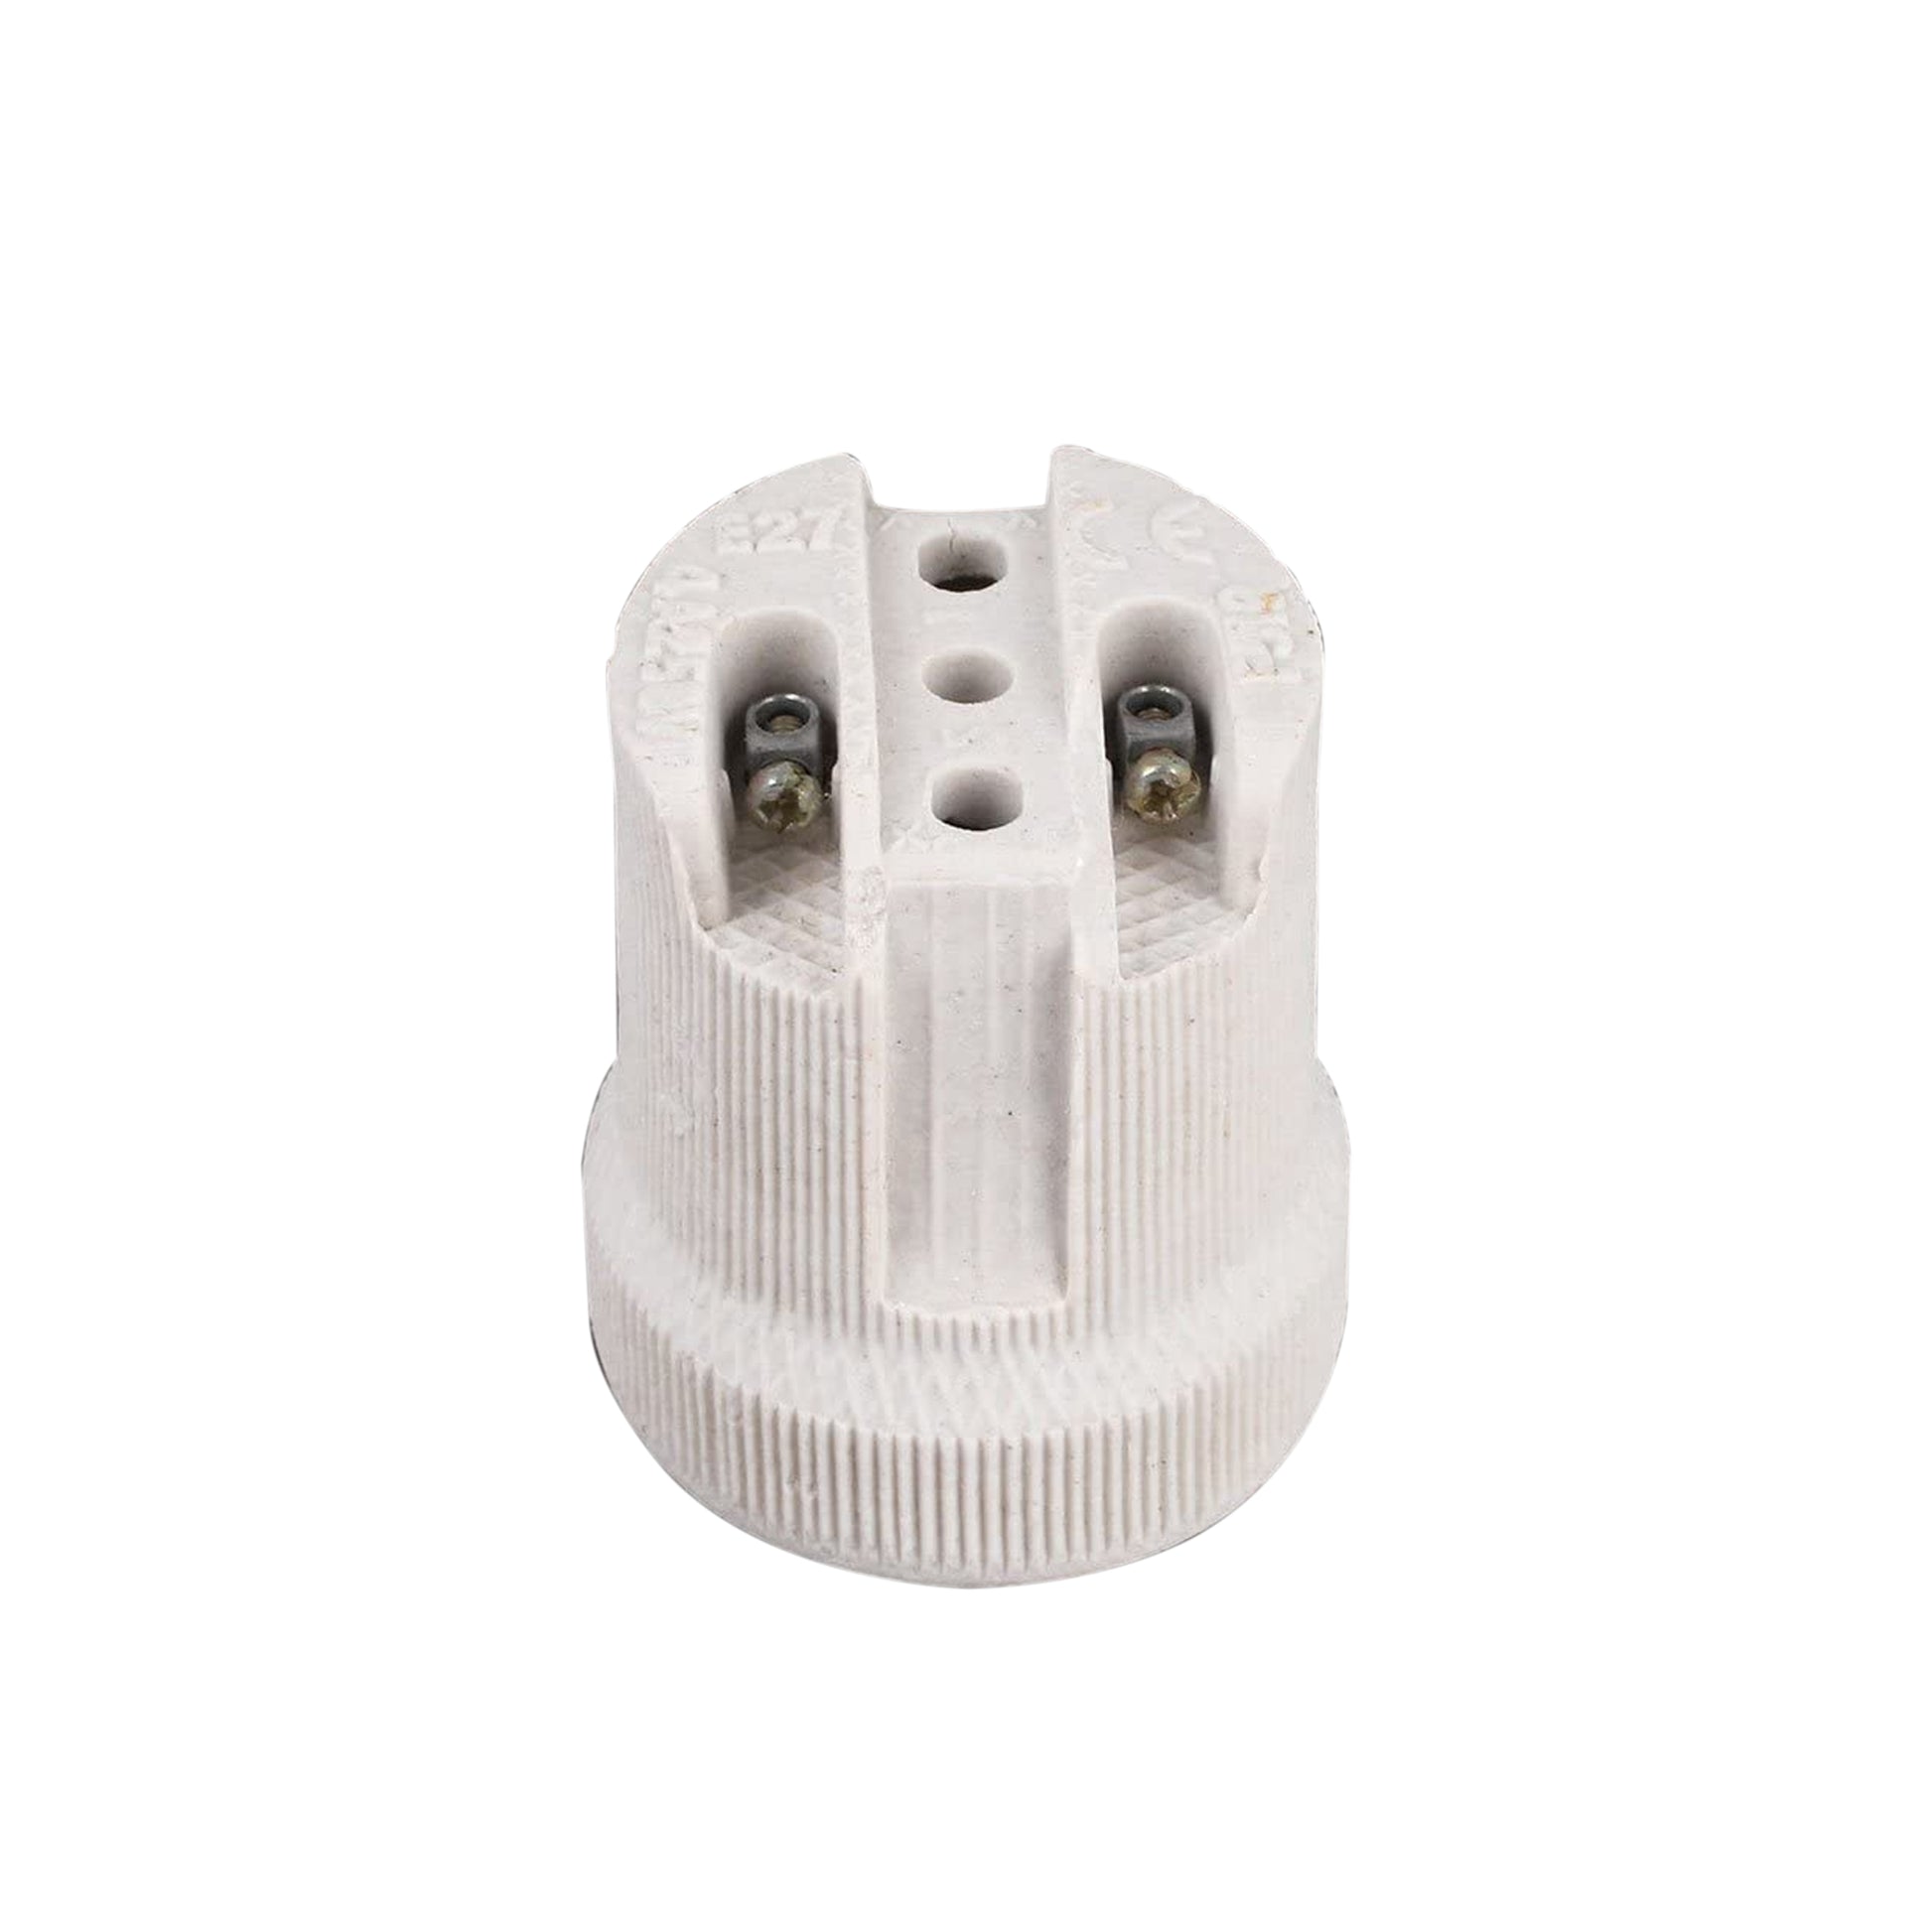 5 Pack E27 Bulb Holder Edison Screw White Ceramic Porcelain Lamp holder For Table Lamp E27 60W Plain Lamp holder Socket UK .